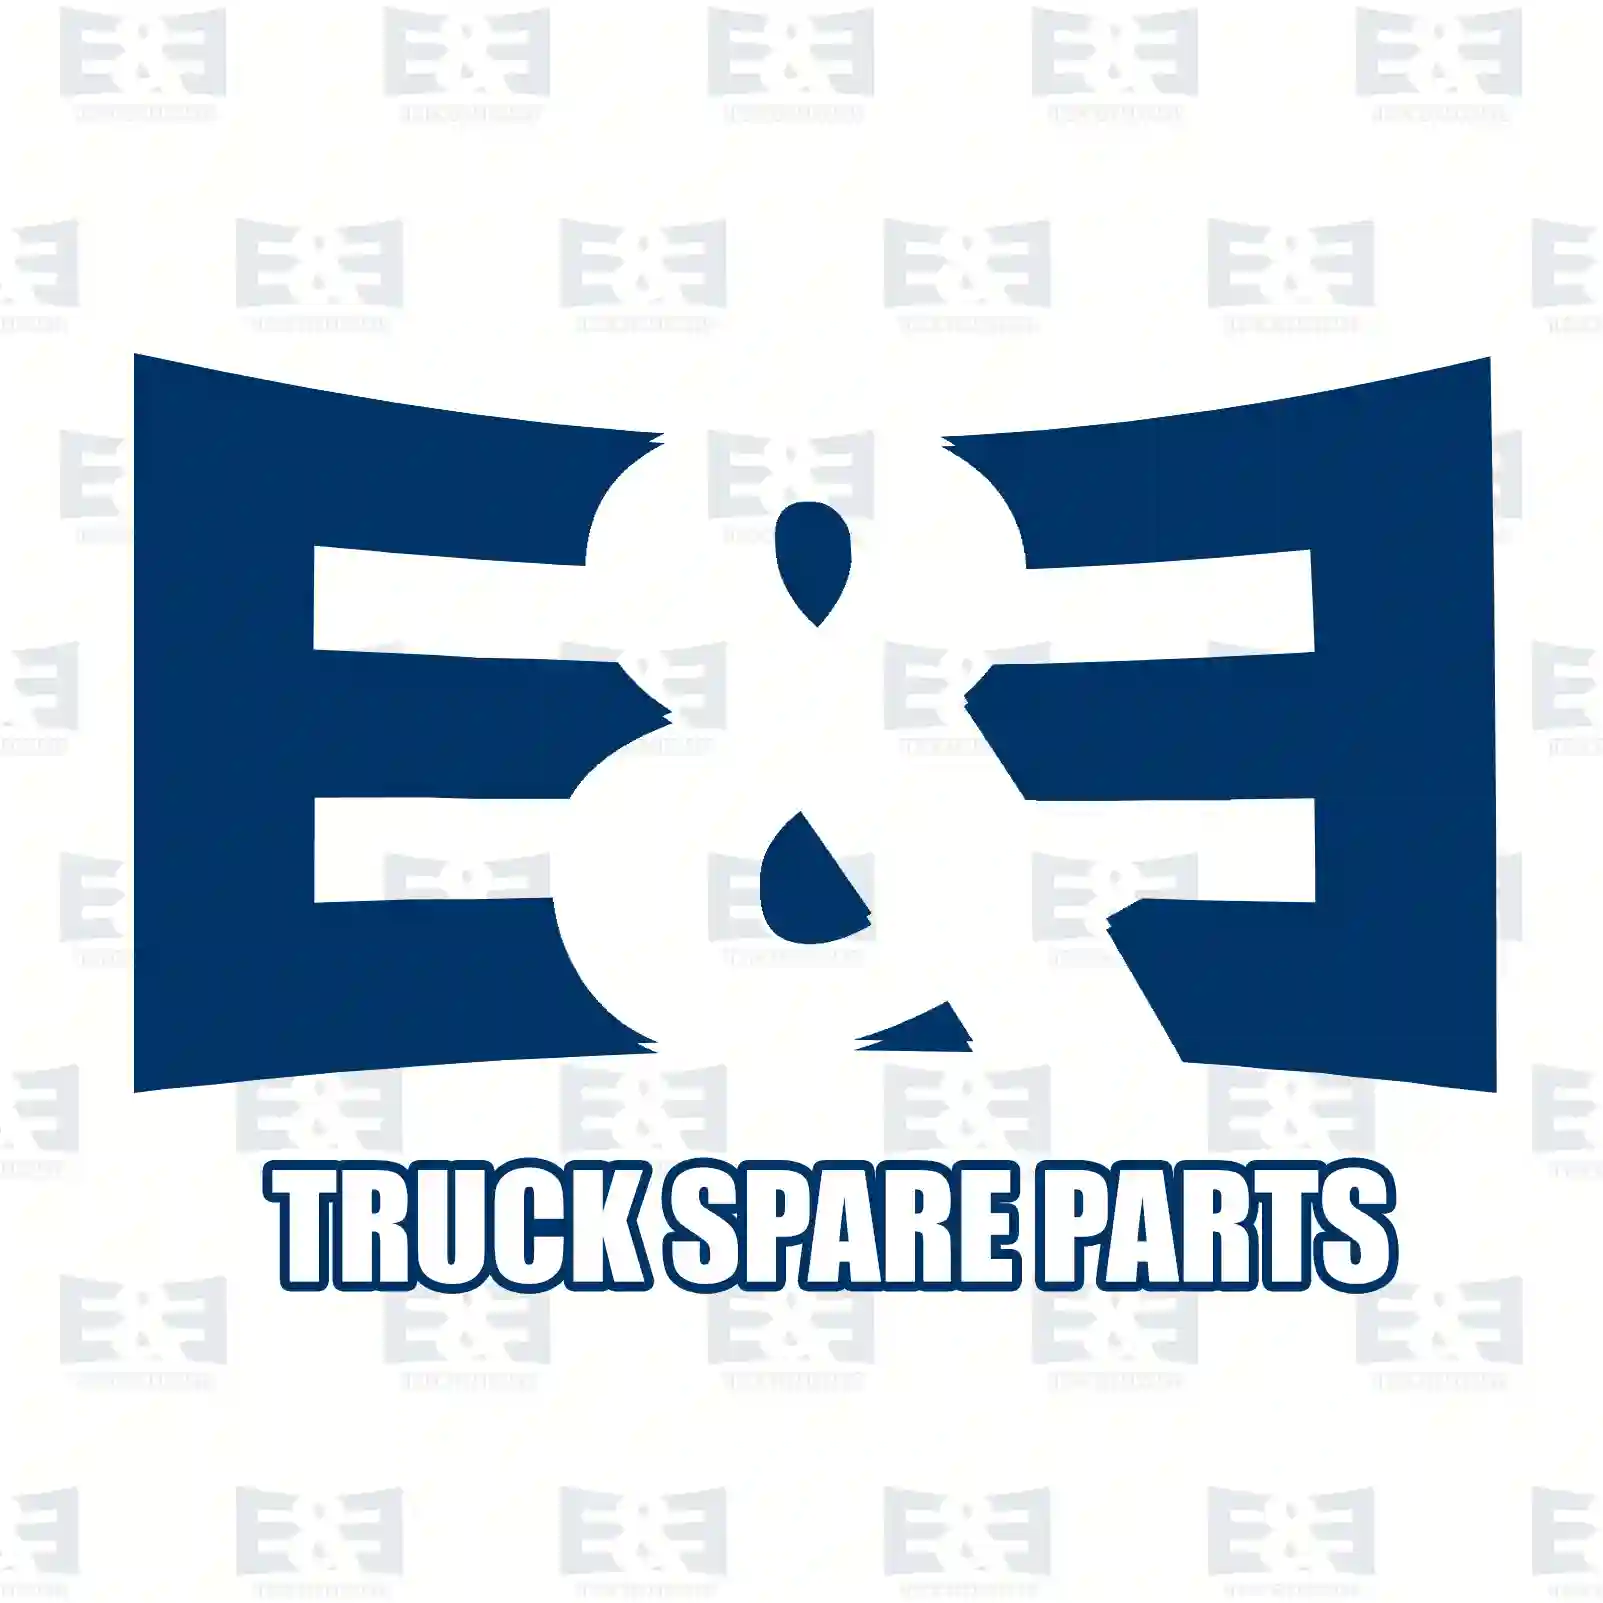 Repair kit, clutch cylinder, 2E2288539, 2903412, 00029532 ||  2E2288539 E&E Truck Spare Parts | Truck Spare Parts, Auotomotive Spare Parts Repair kit, clutch cylinder, 2E2288539, 2903412, 00029532 ||  2E2288539 E&E Truck Spare Parts | Truck Spare Parts, Auotomotive Spare Parts